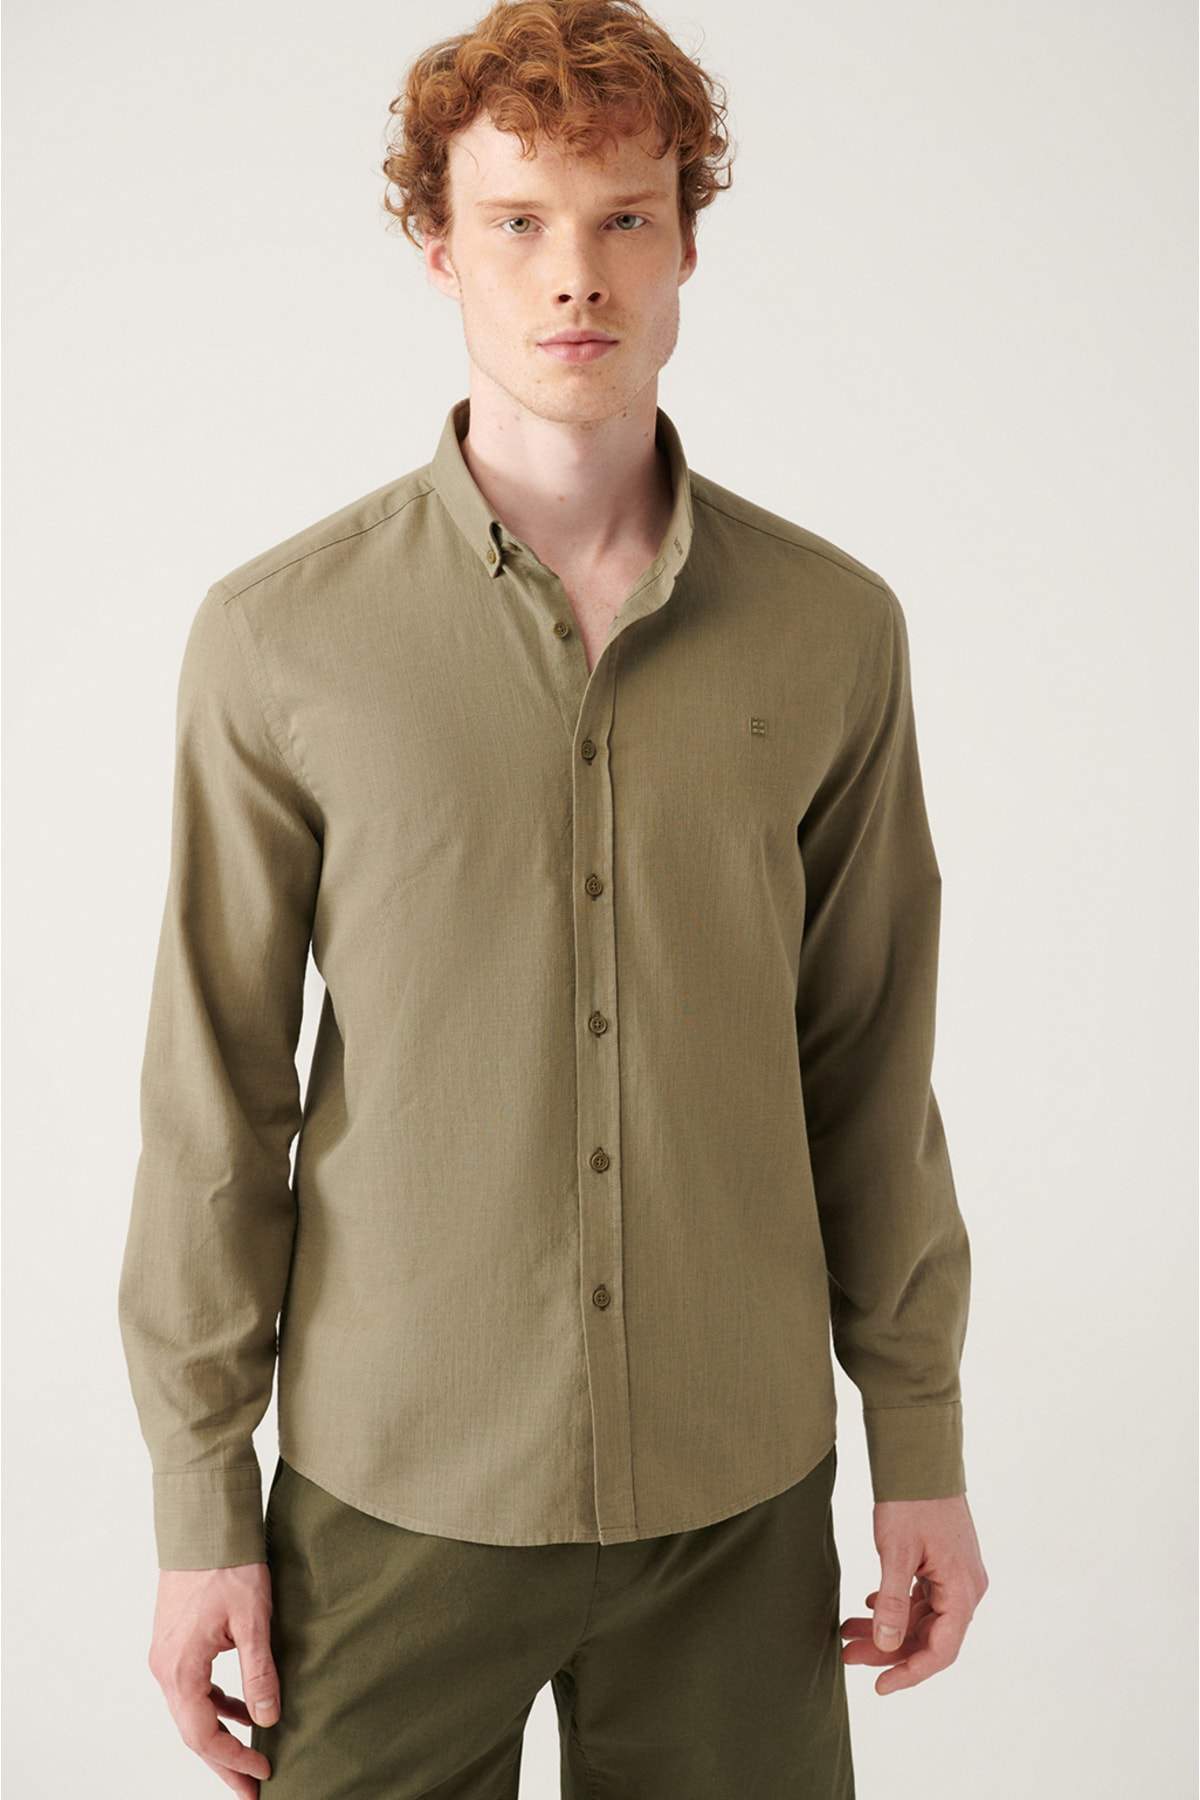 khaki-buttoned-collar-comfort-fit-100-cotton-linen-textured-shirt